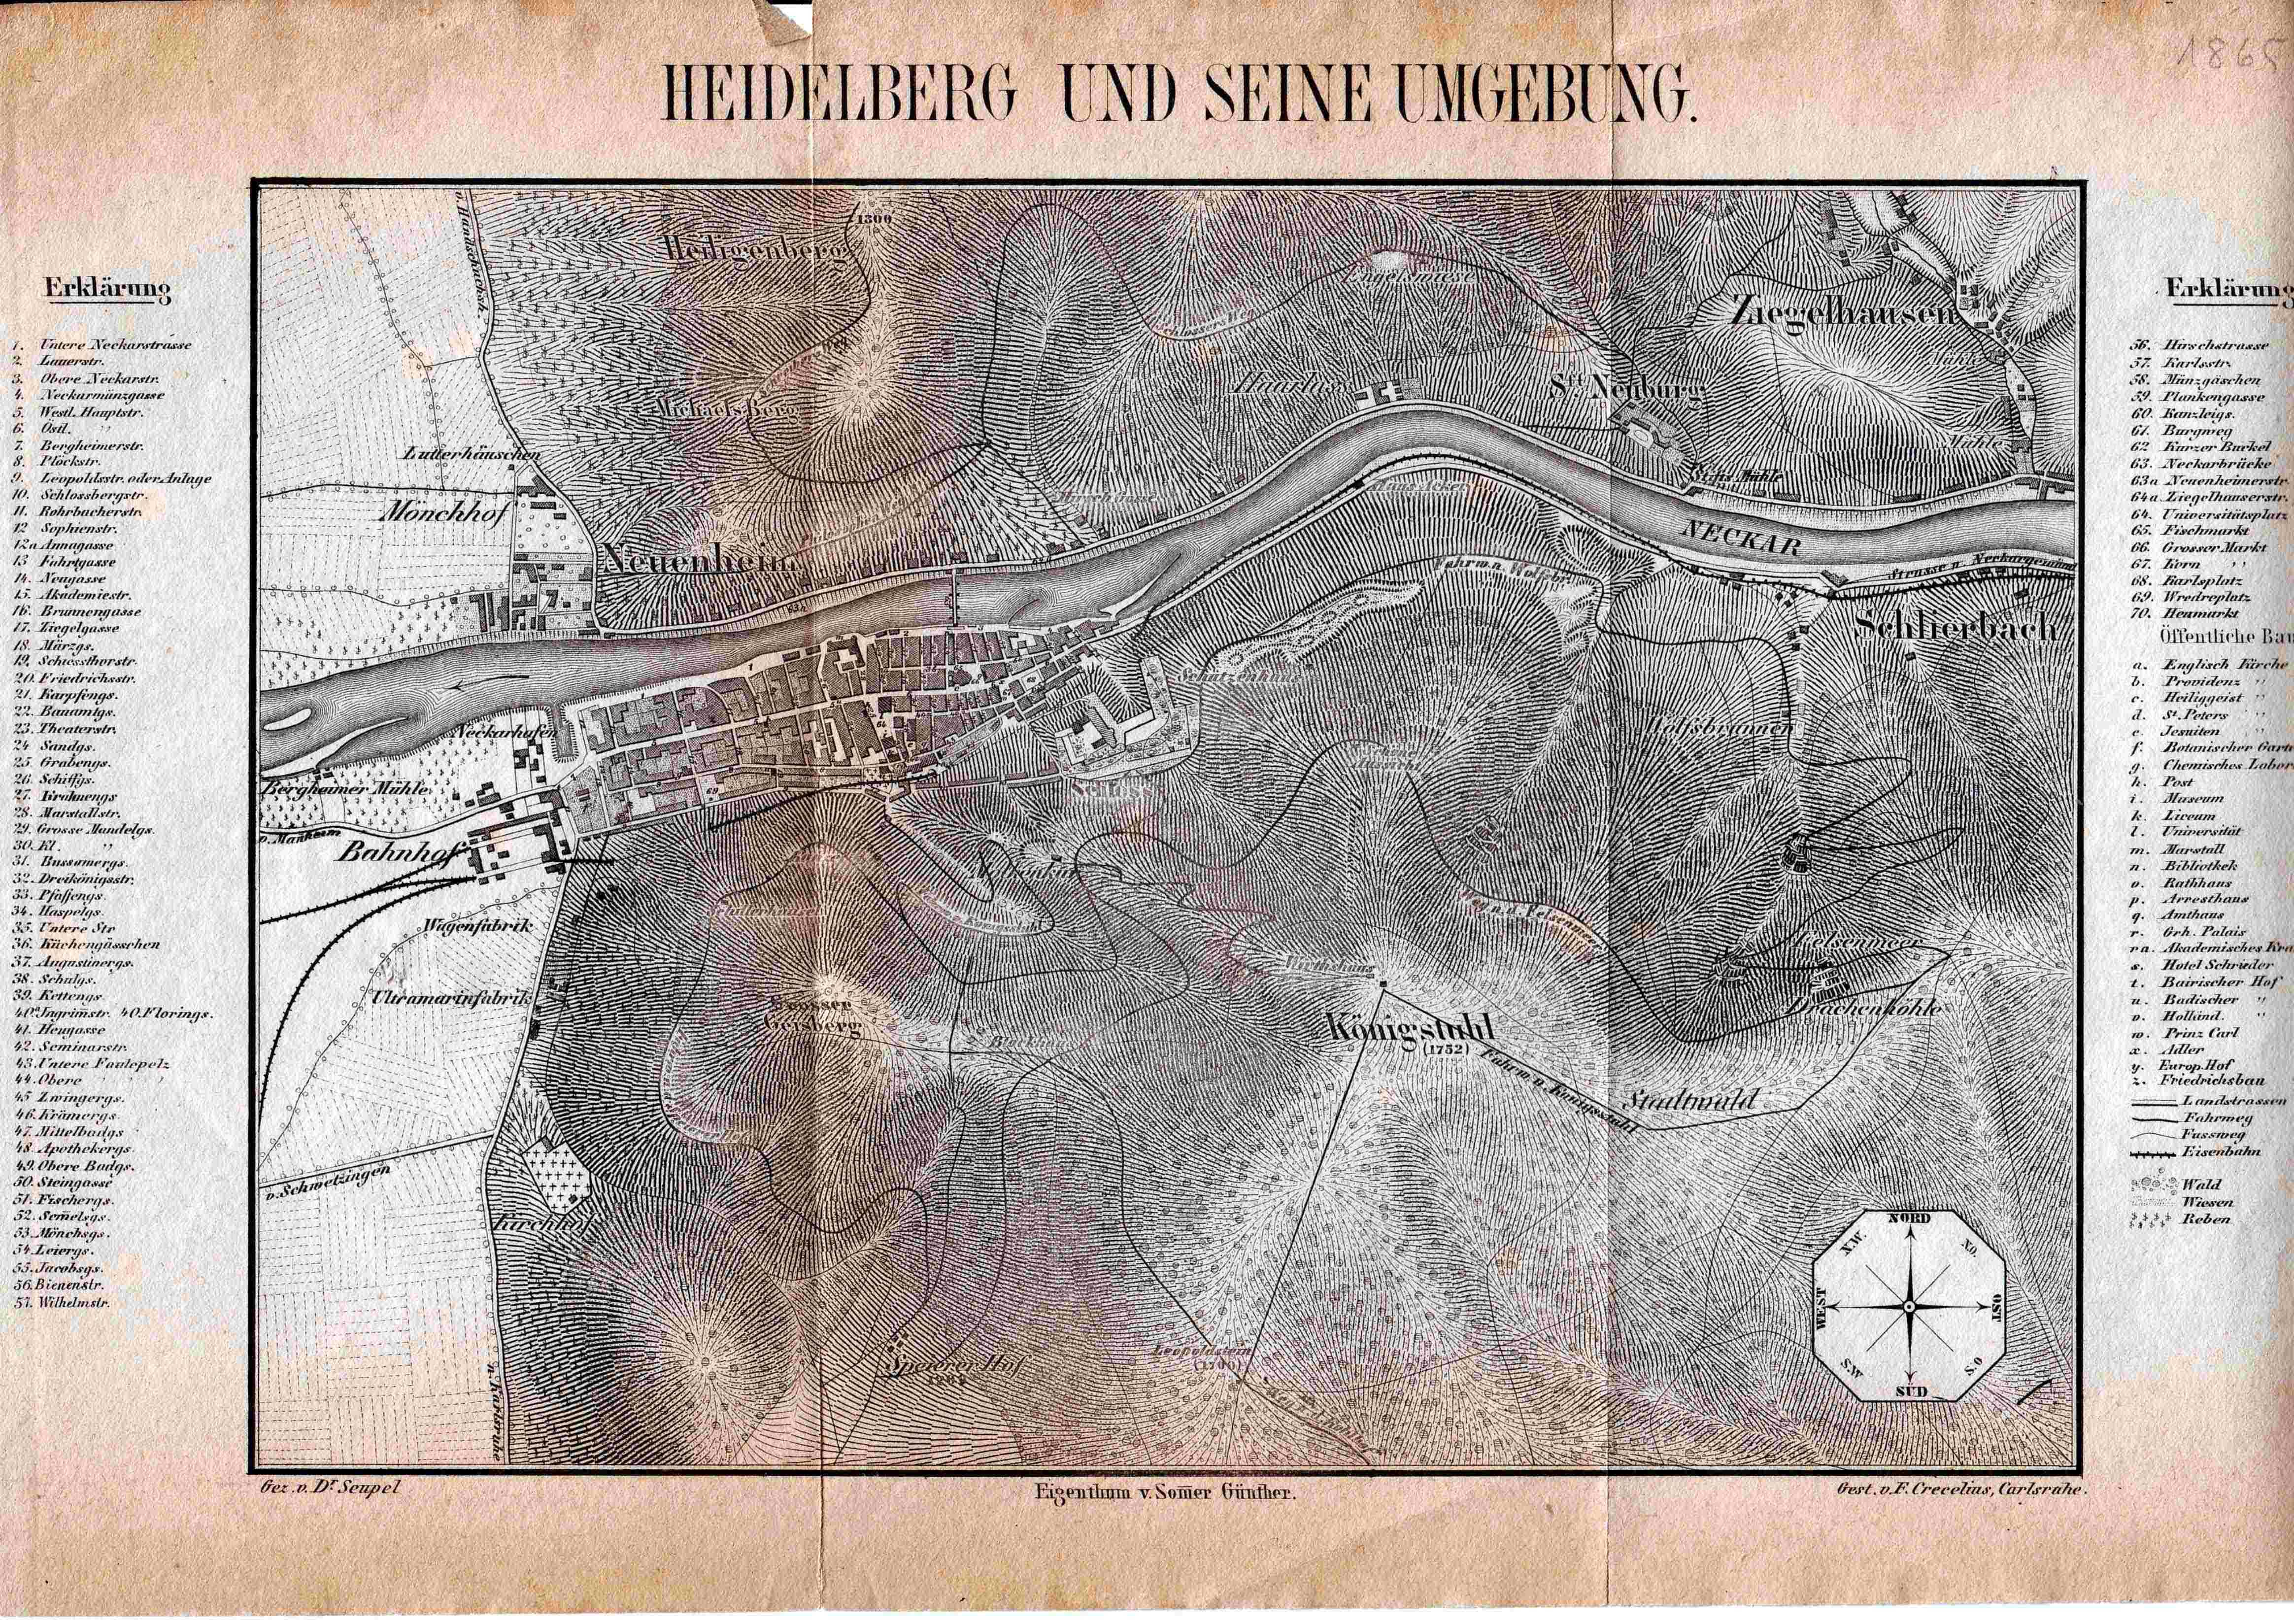 Karte der Umgebung von Heidelberg um 1865